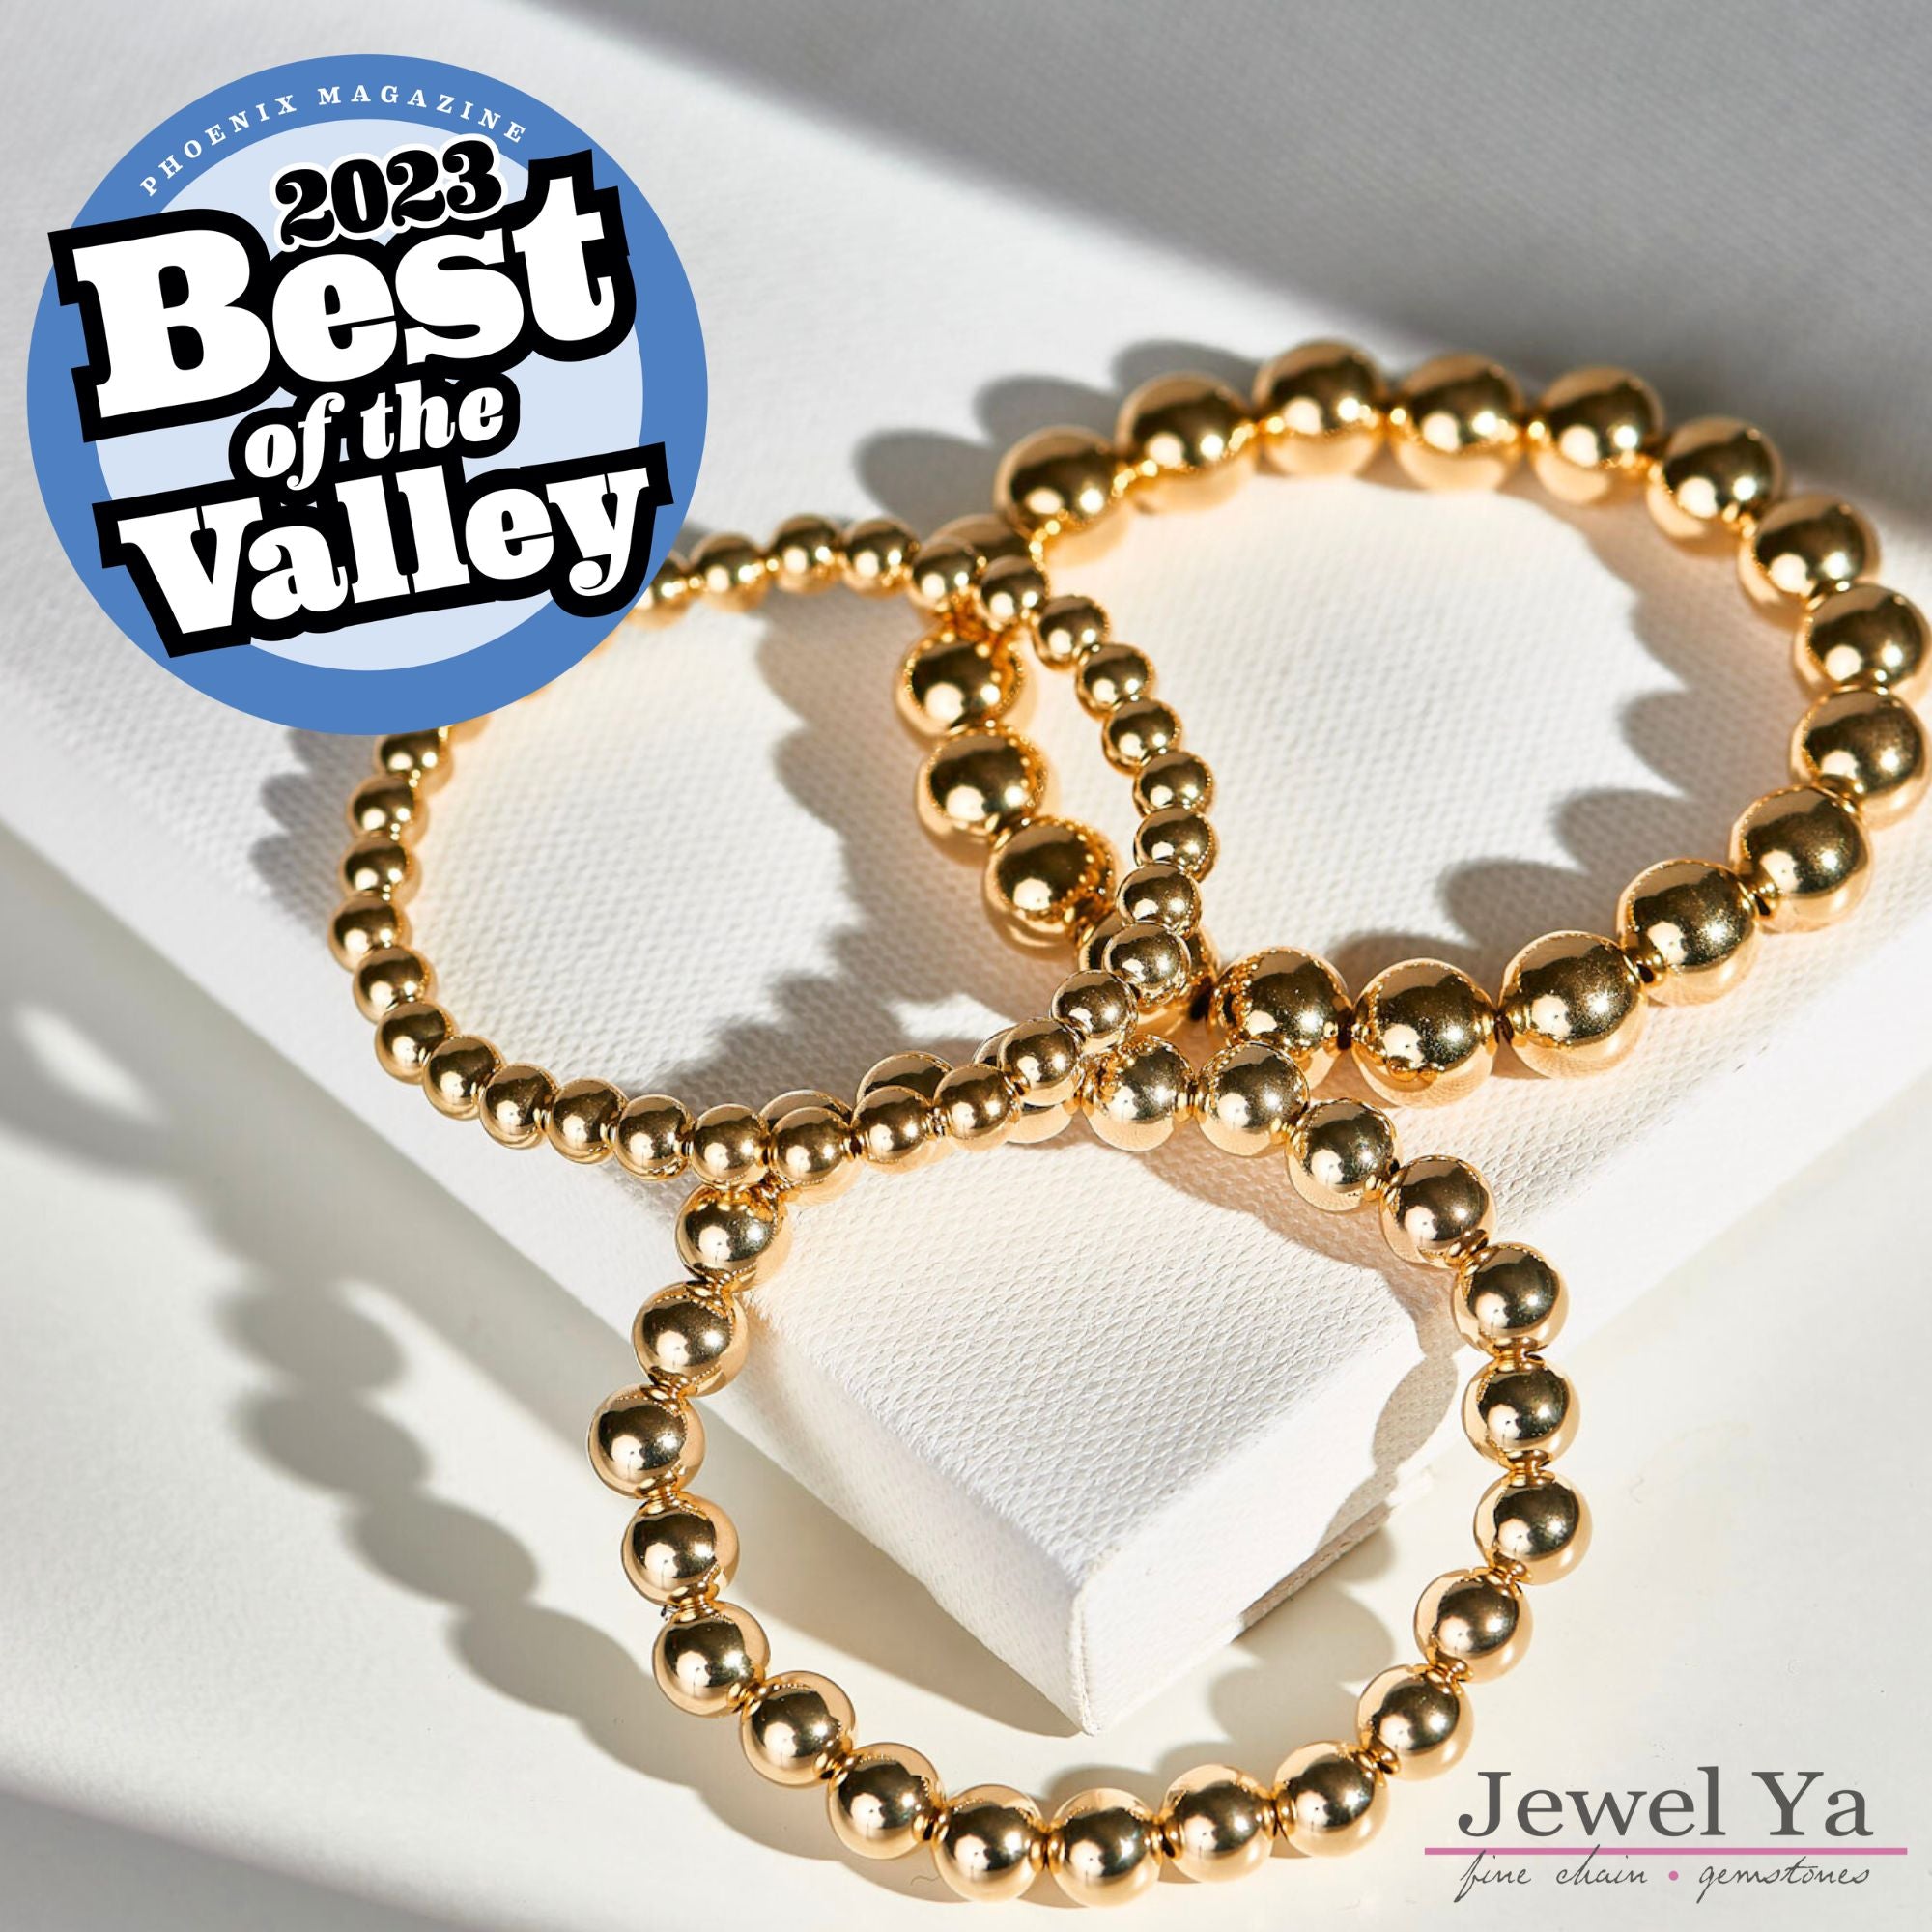 6mm Beaded Lux Heart Bracelet - Jewel Ya